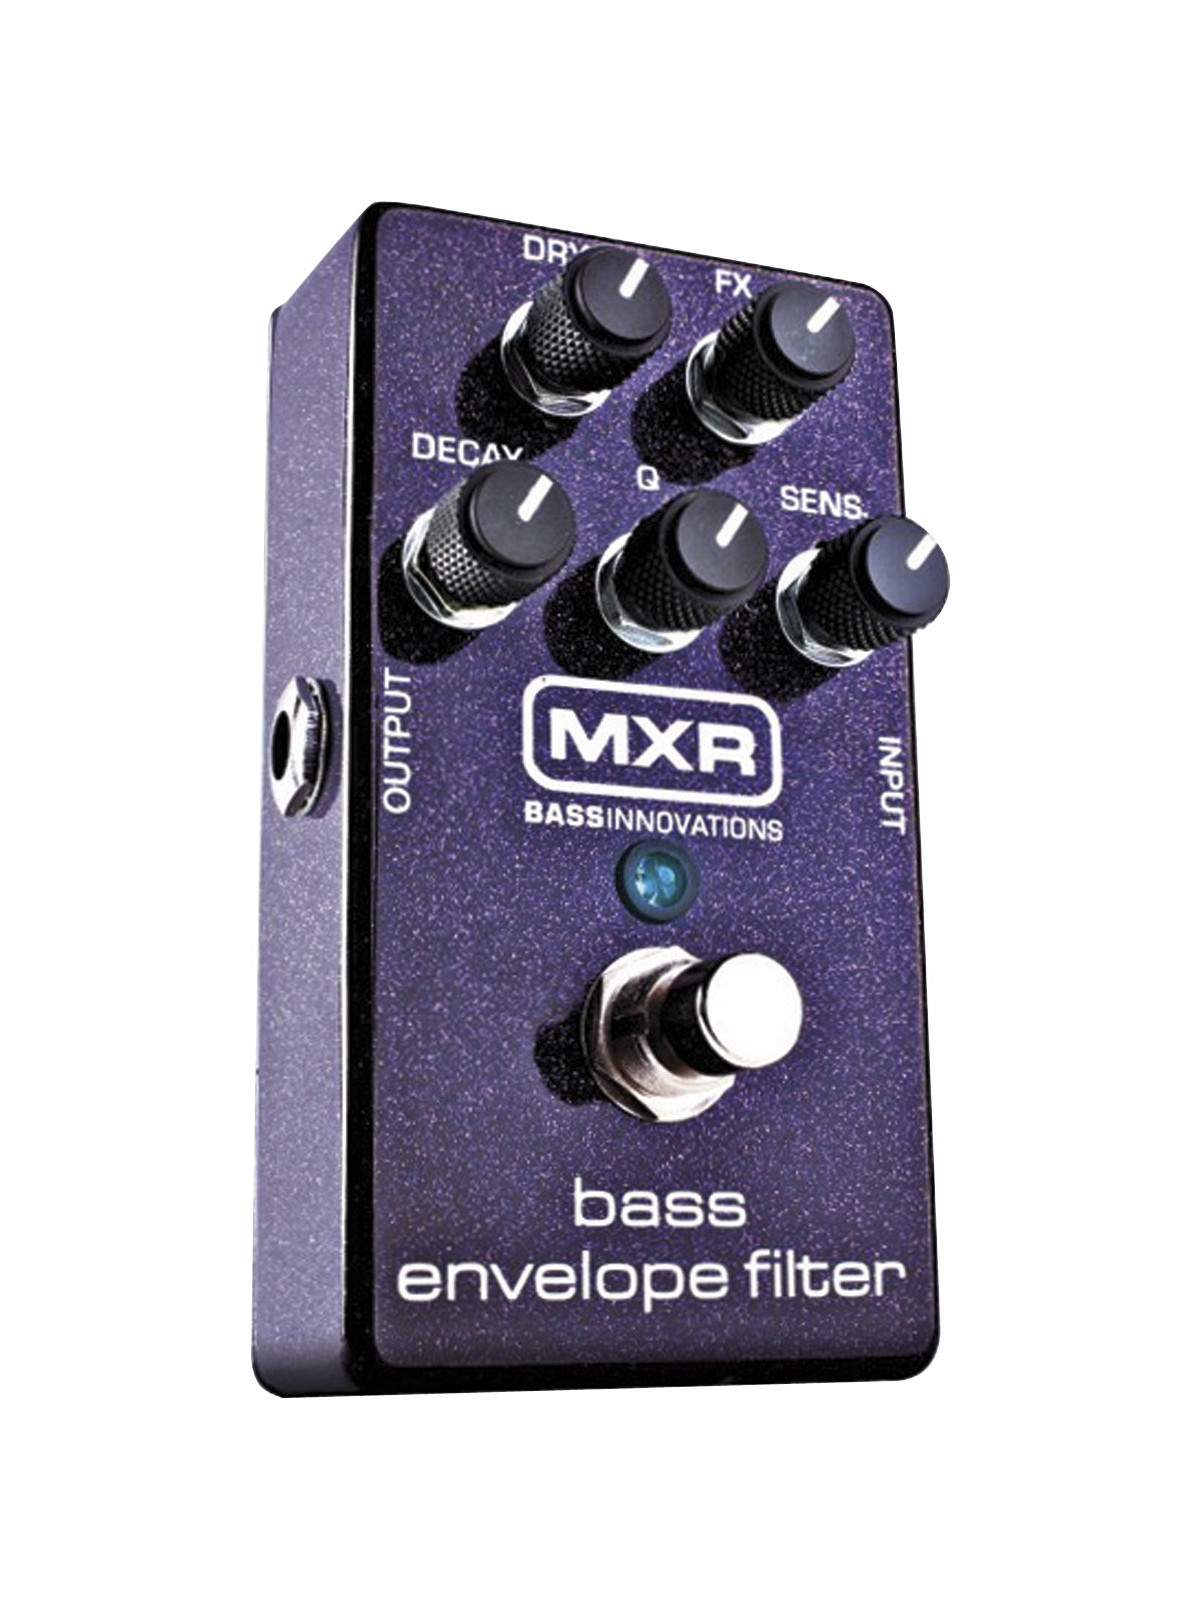 MXR M82 Bass envelope filter